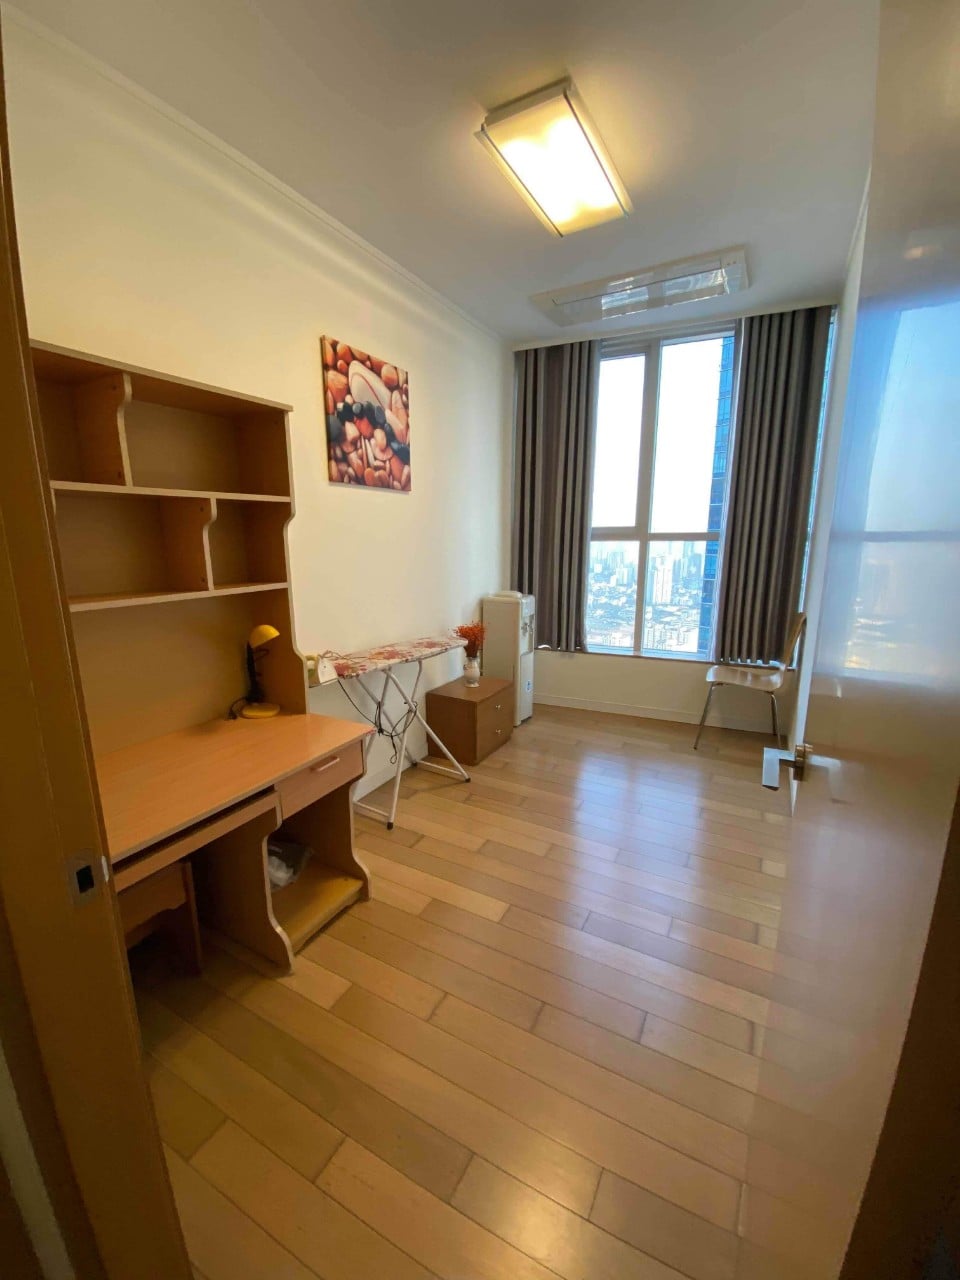 Cho thuê căn hộ 3 phòng ngủ chung cư Keangnam full nội thất cao cấp, vào ở được ngay (ảnh thật) 999150